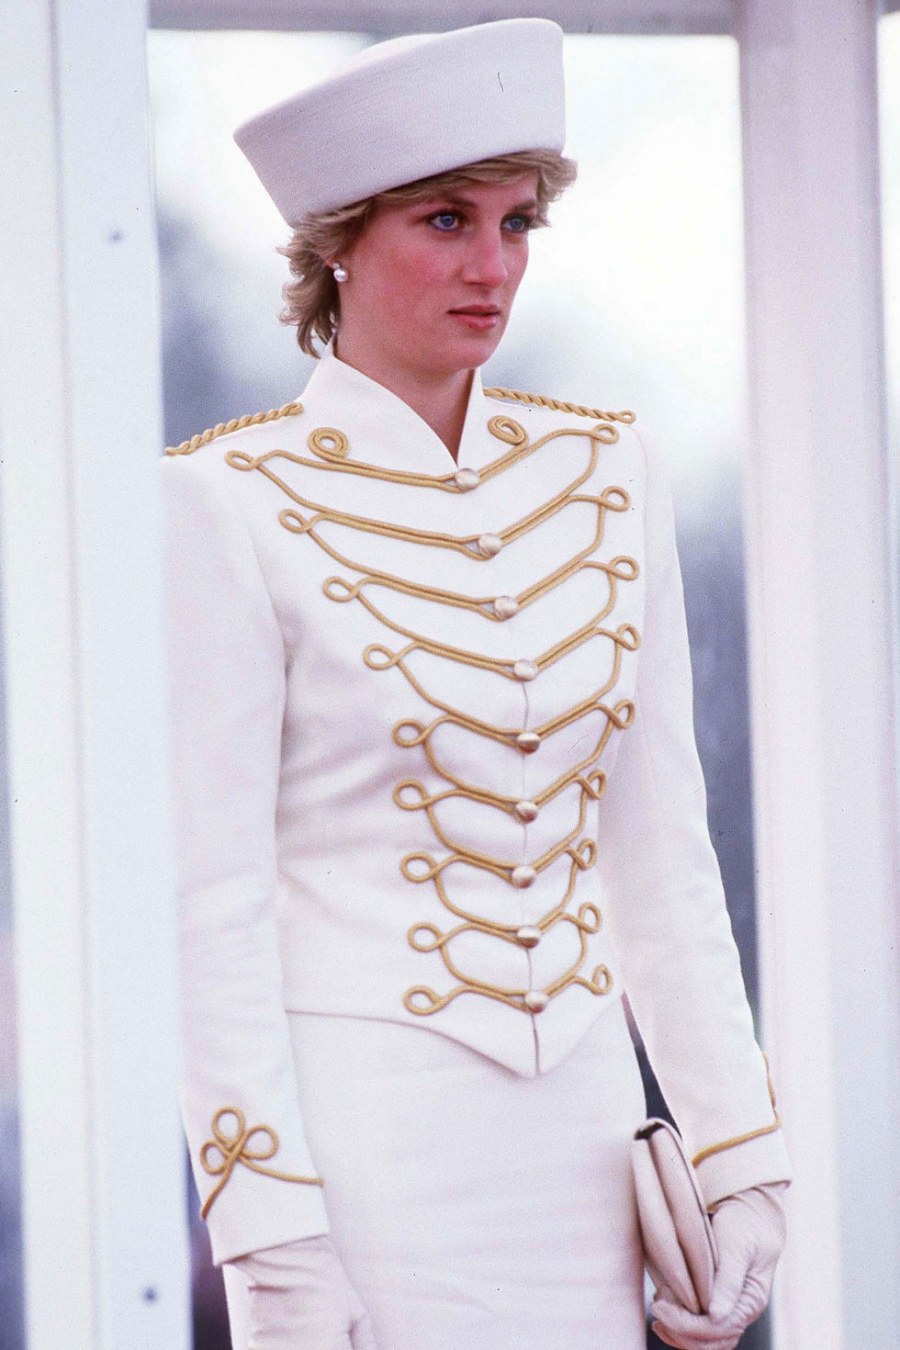 Bộ quân phục với hai màu chủ đạo là trắng và vàng tạo cho bà vẻ ngoài nghiêm trang nhưng vẫn đẹp hoàn hảo.